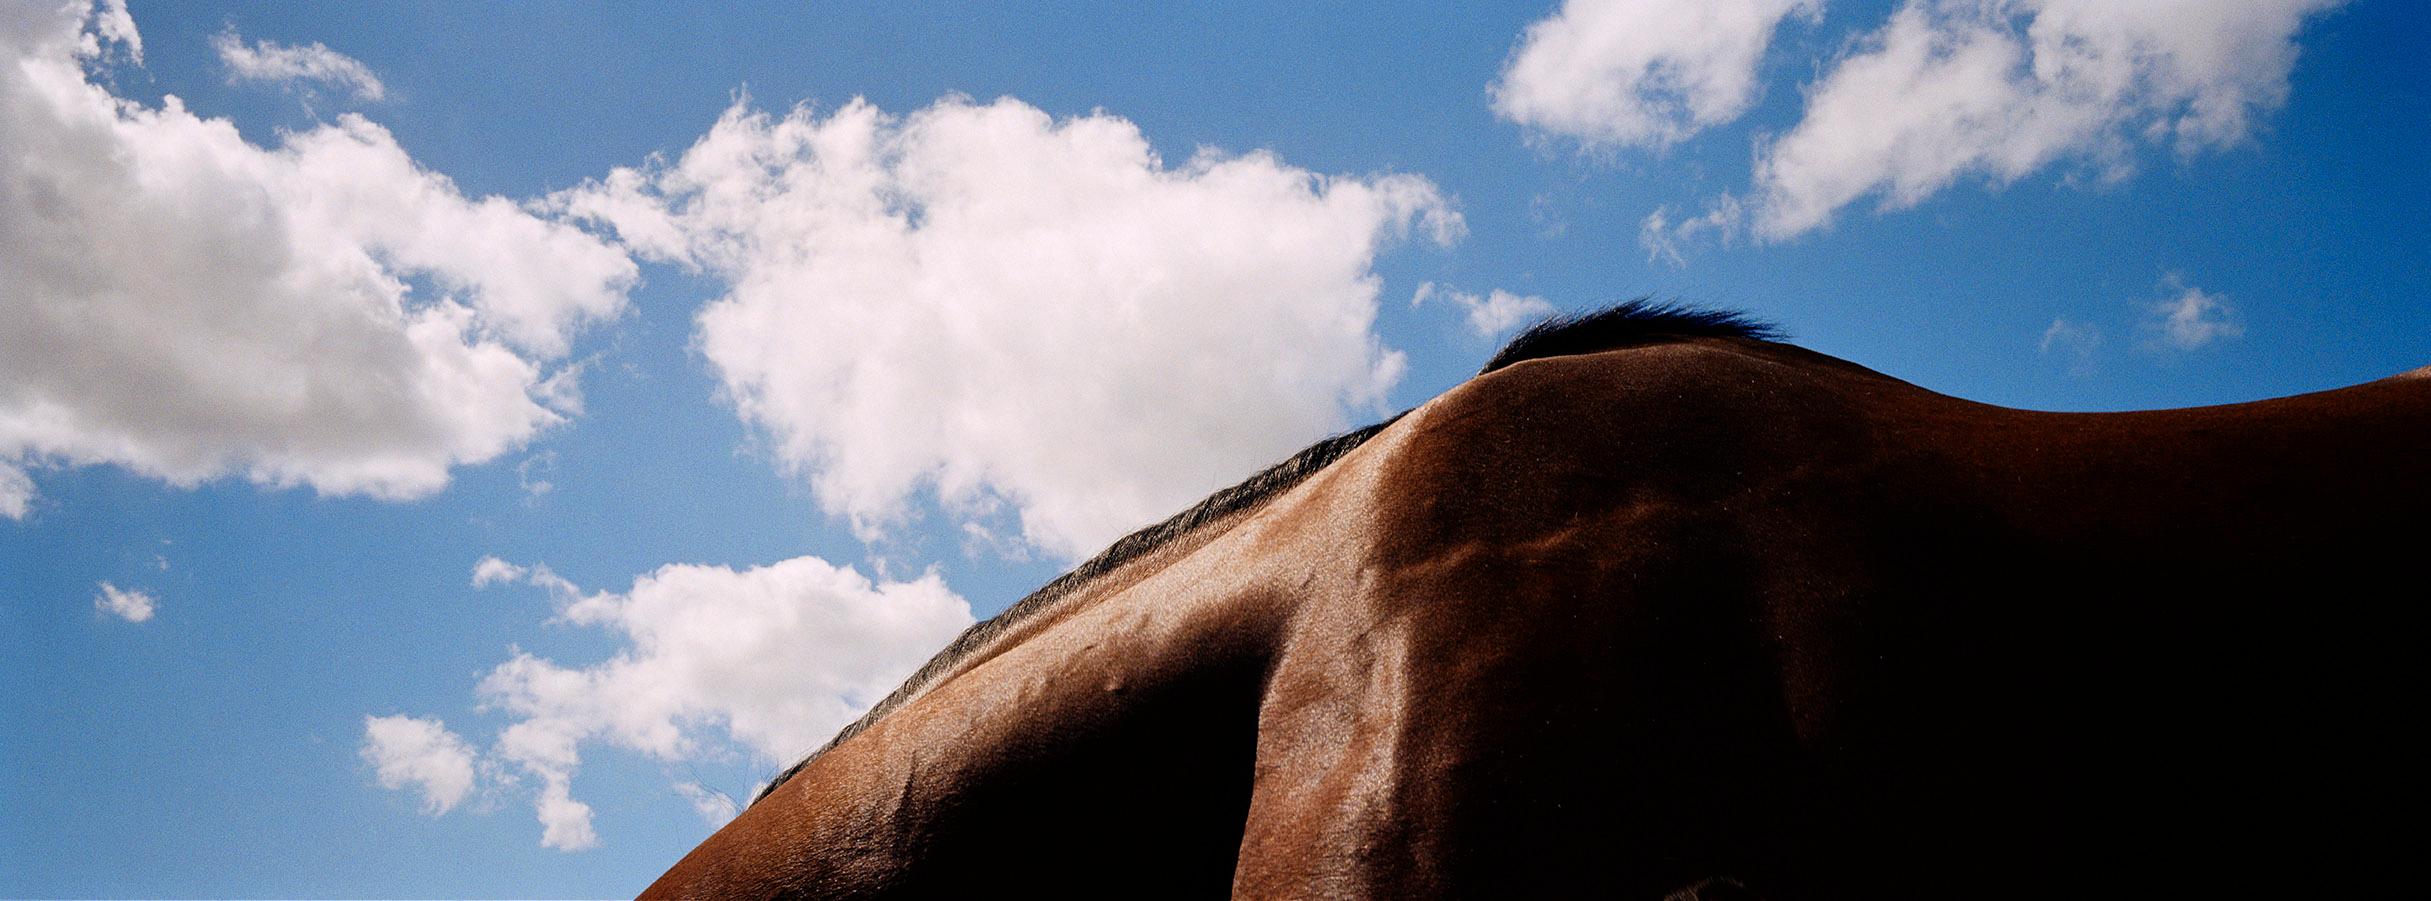 Noverre - Paysage de chevaux I, ciel bleu et nuages, imprimé Panoramic, Australie 